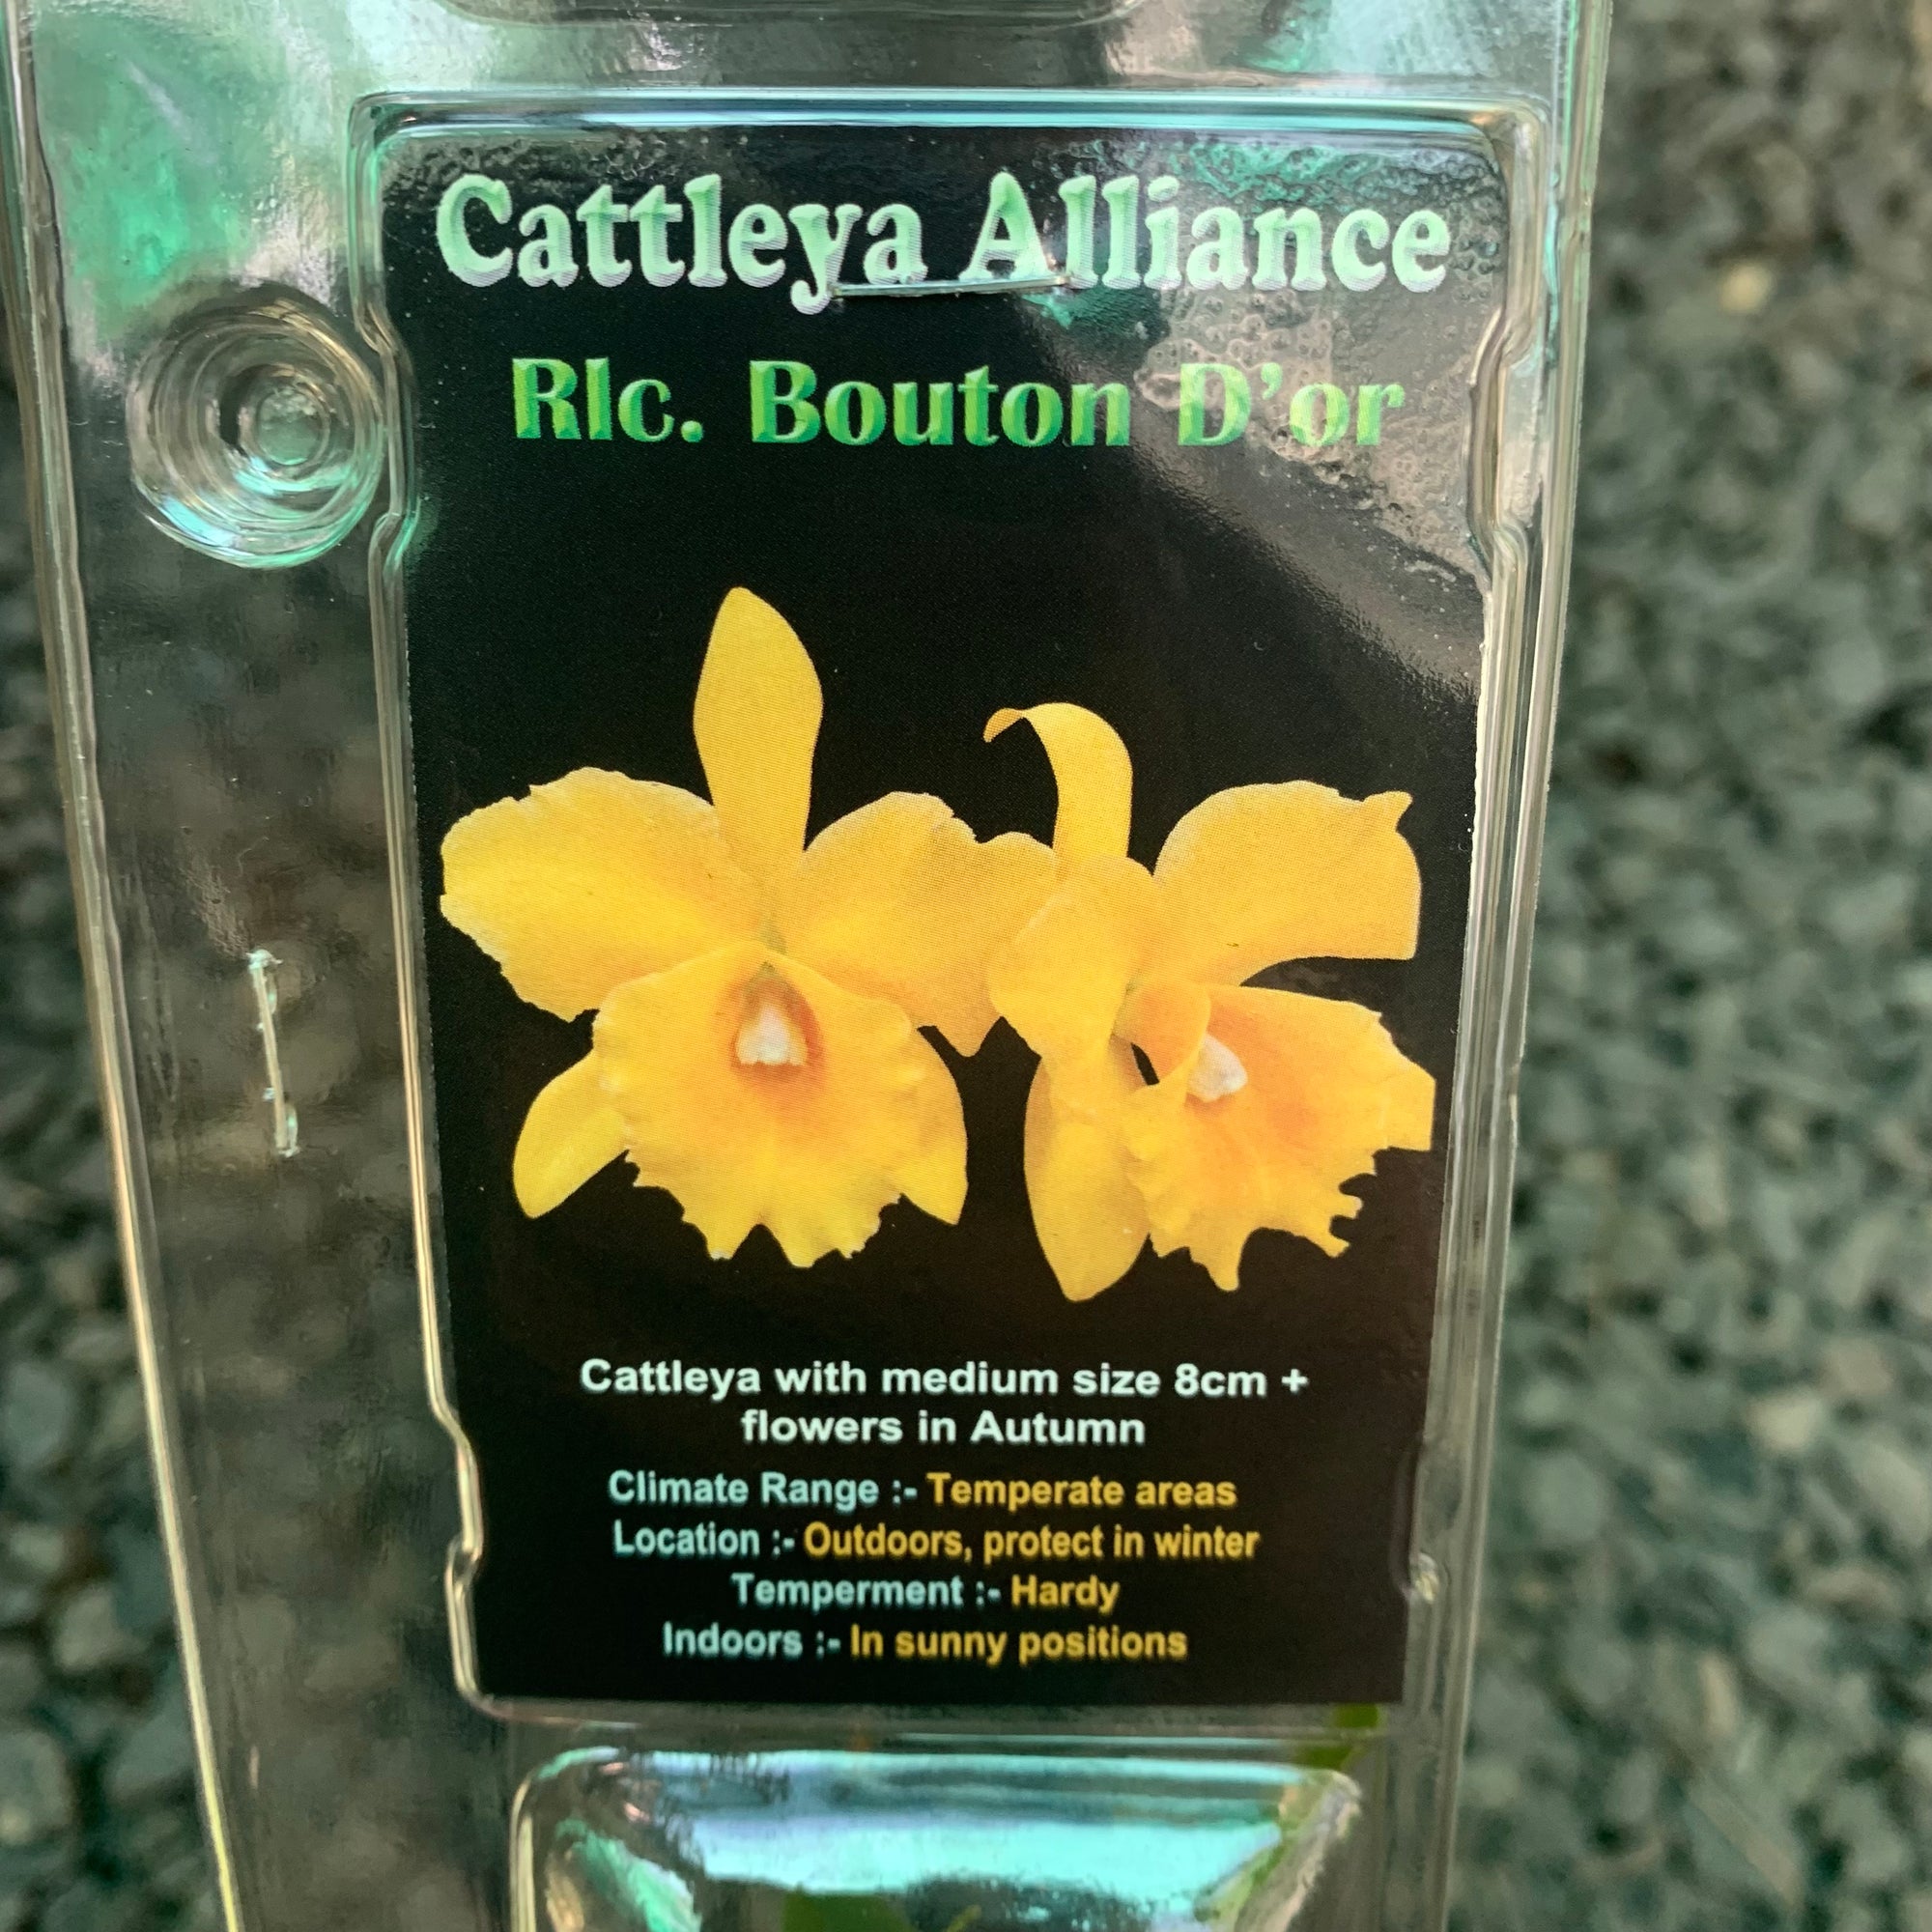 Orchid - Cattleya Alliance ‘Rlc. Boulton D’or